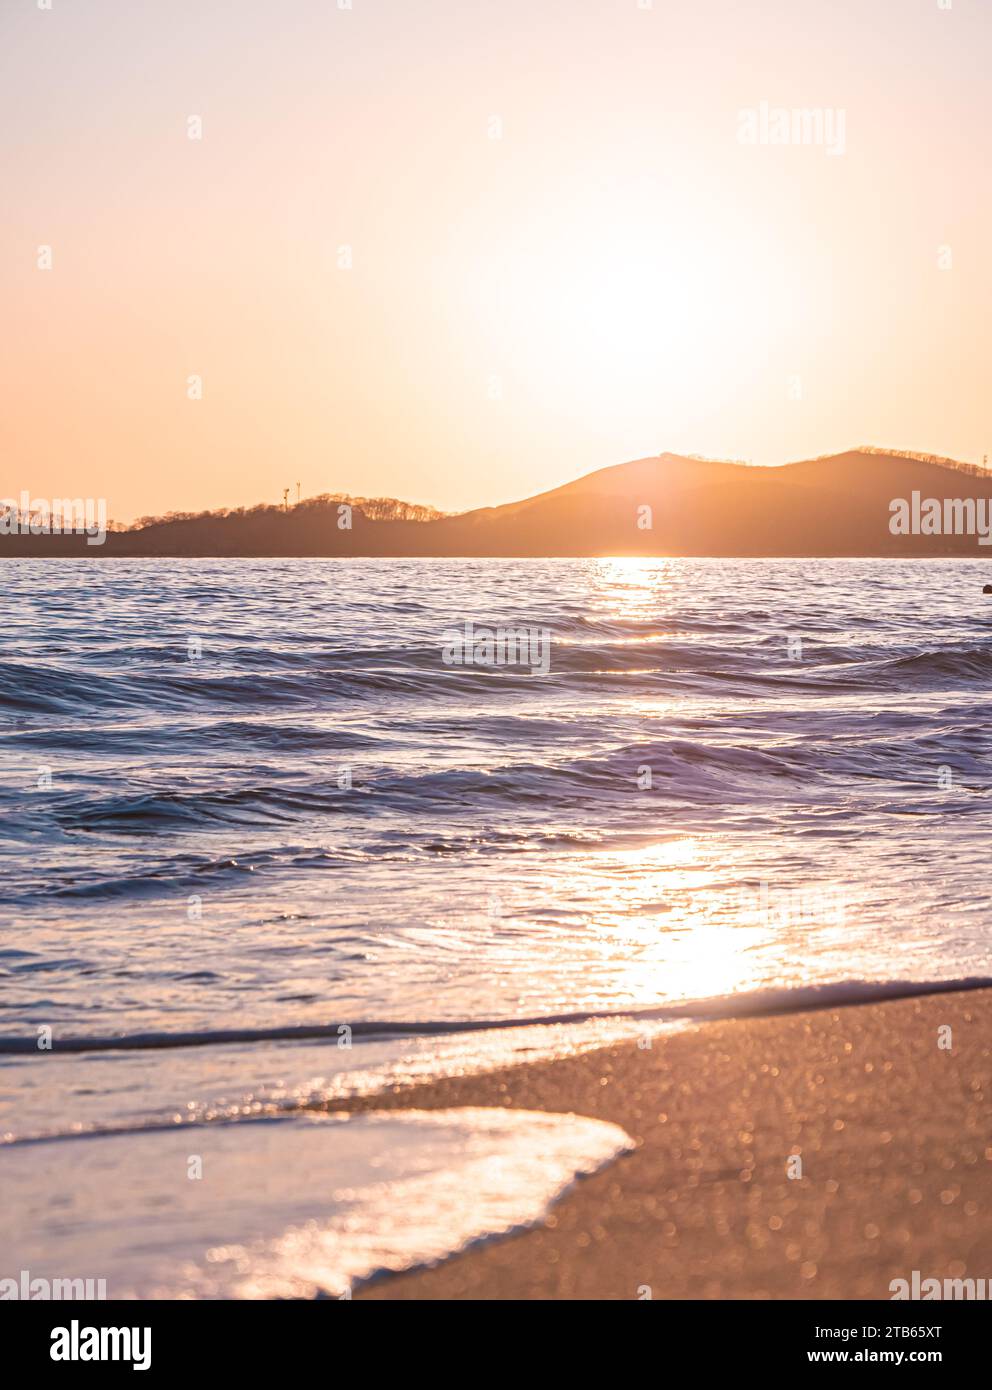 Puesta de sol en la playa. Naranja y dorado atardecer cielo calma tranquila luz solar relajante verano estado de ánimo. Foto de stock